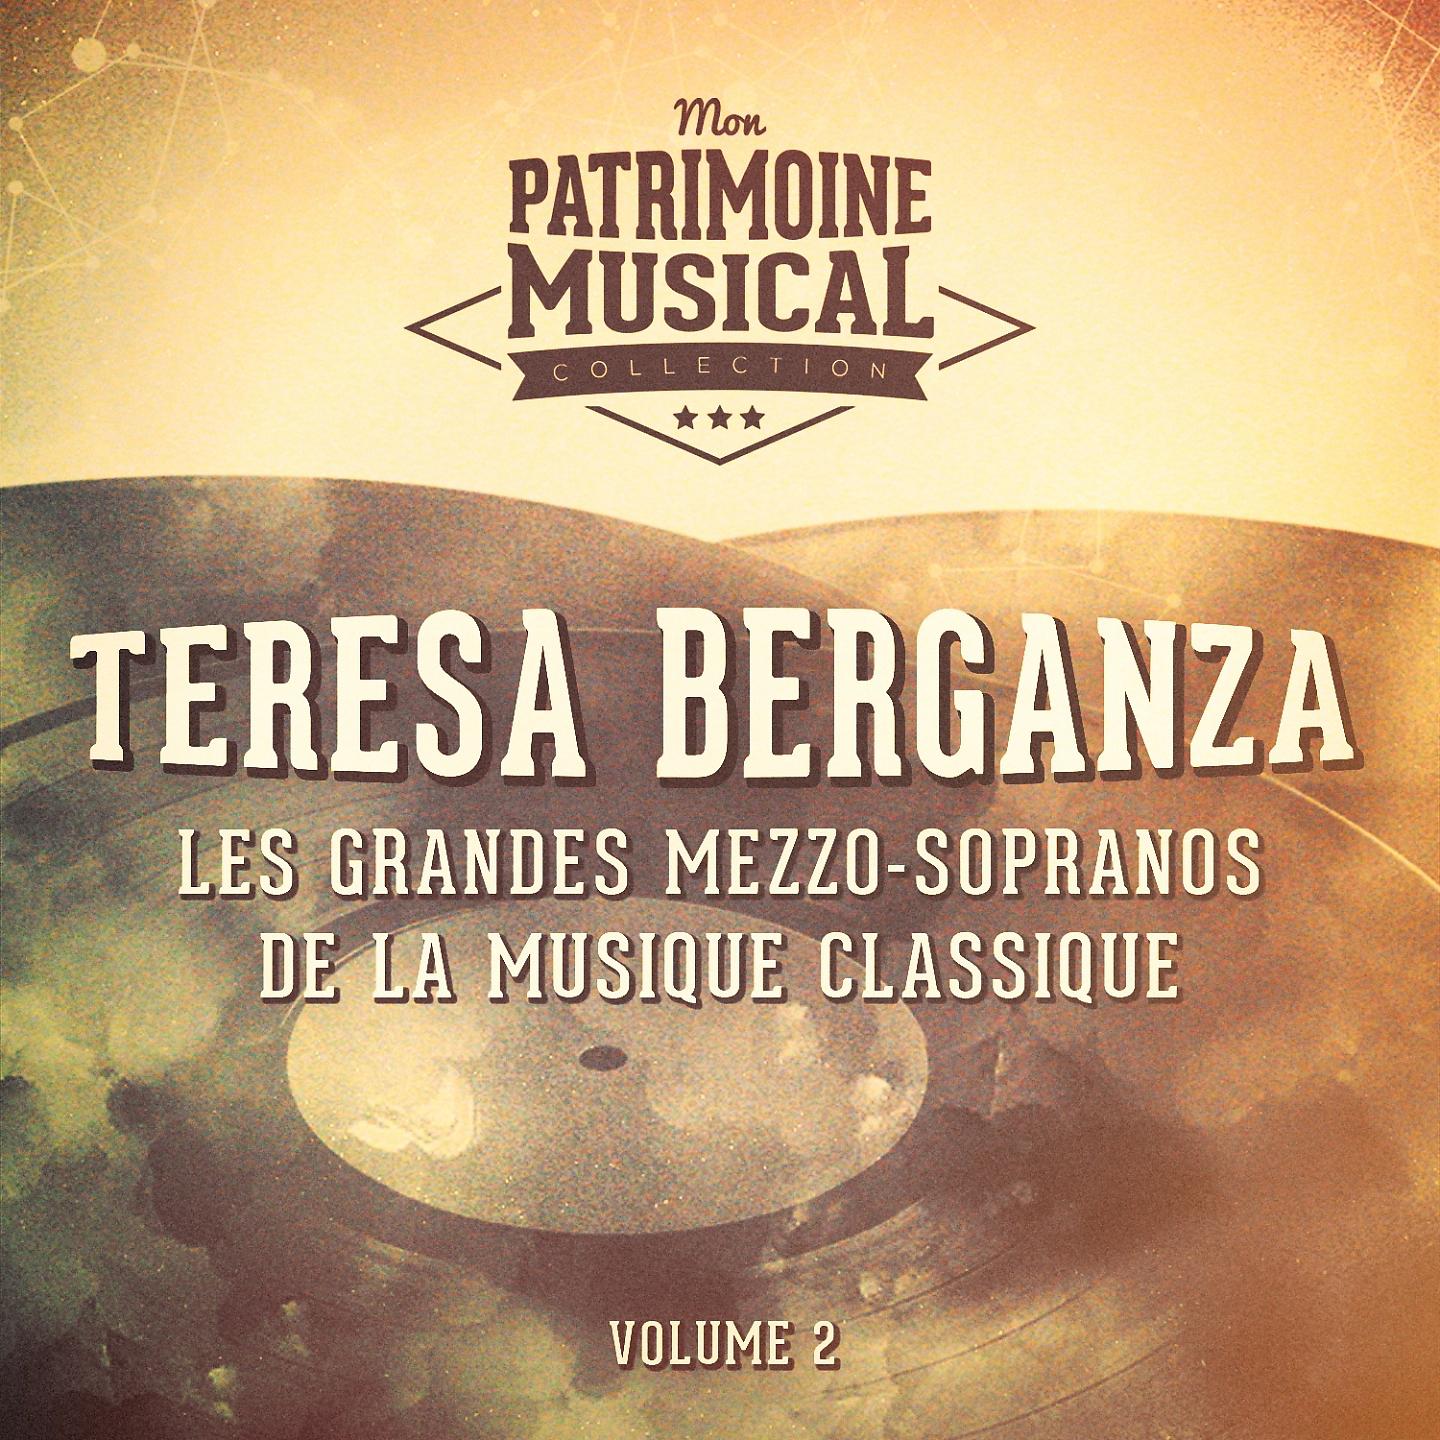 Постер альбома Les grandes mezzo-sopranos de la musique classique : Teresa Berganza, Vol. 2 (Folklore basque et espagnol)